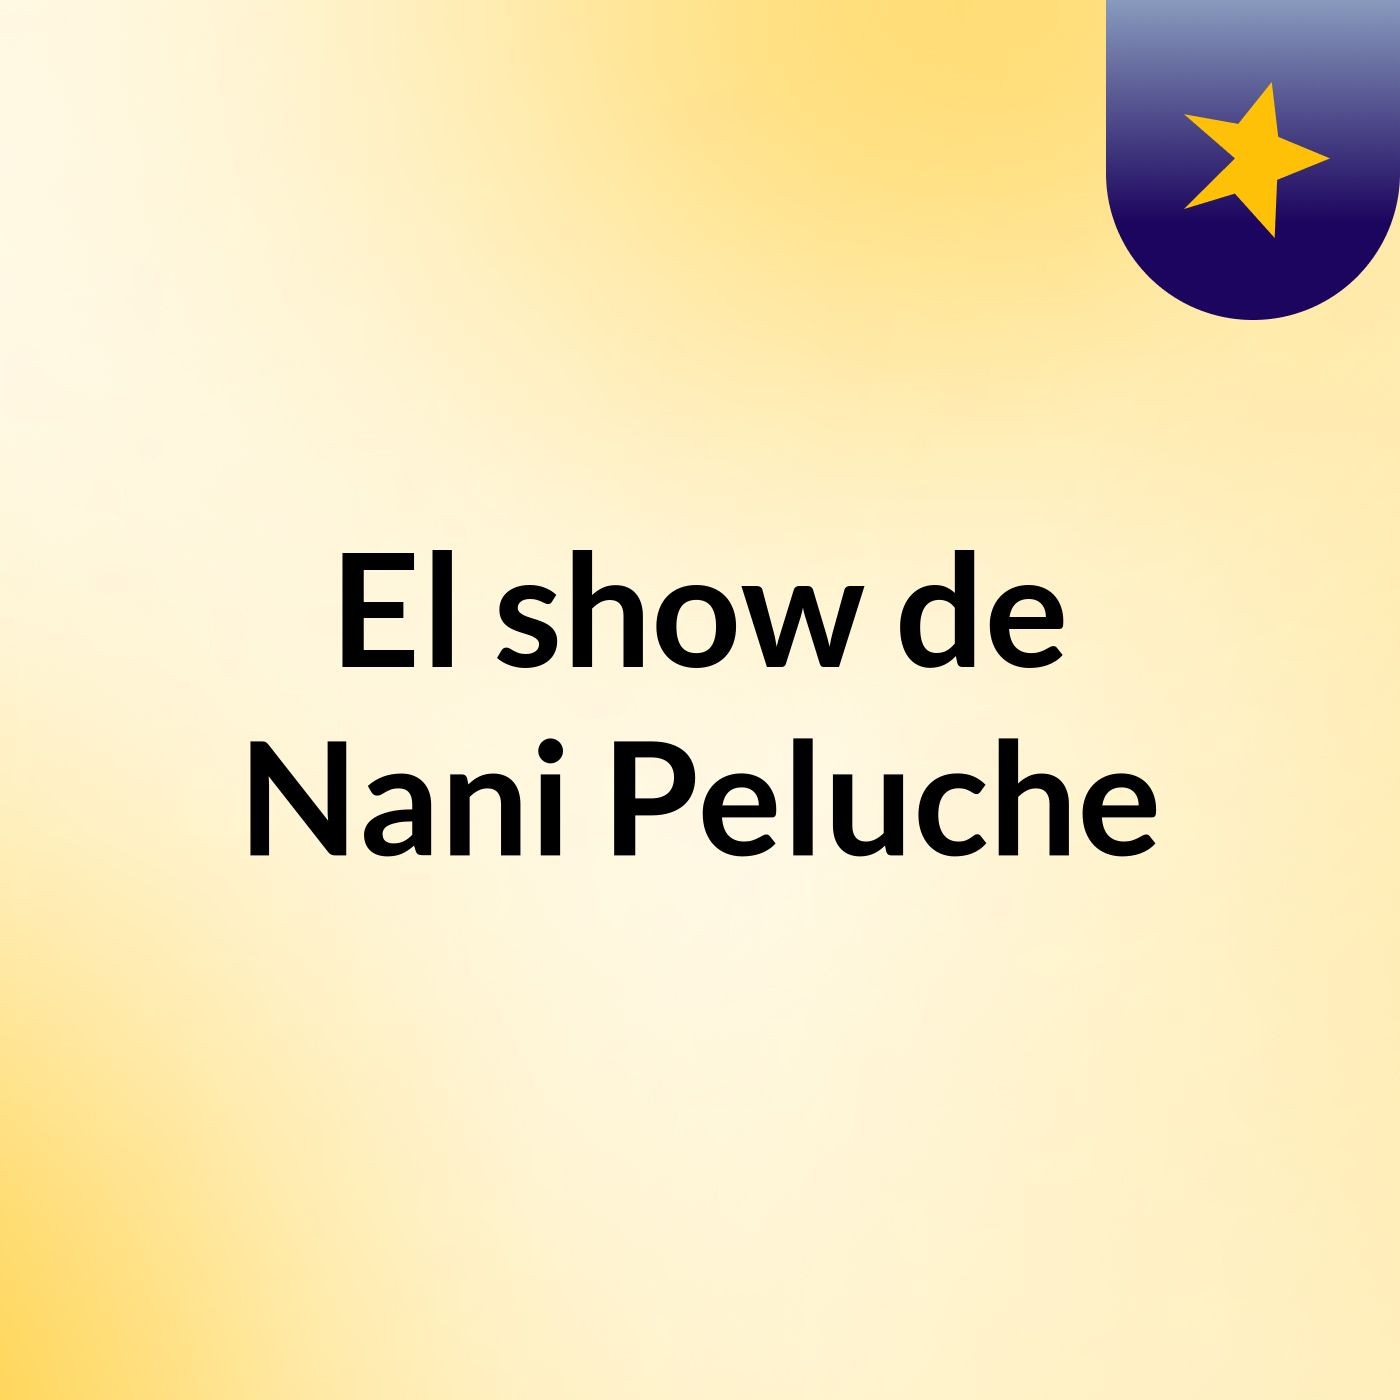 El show de Nani Peluche